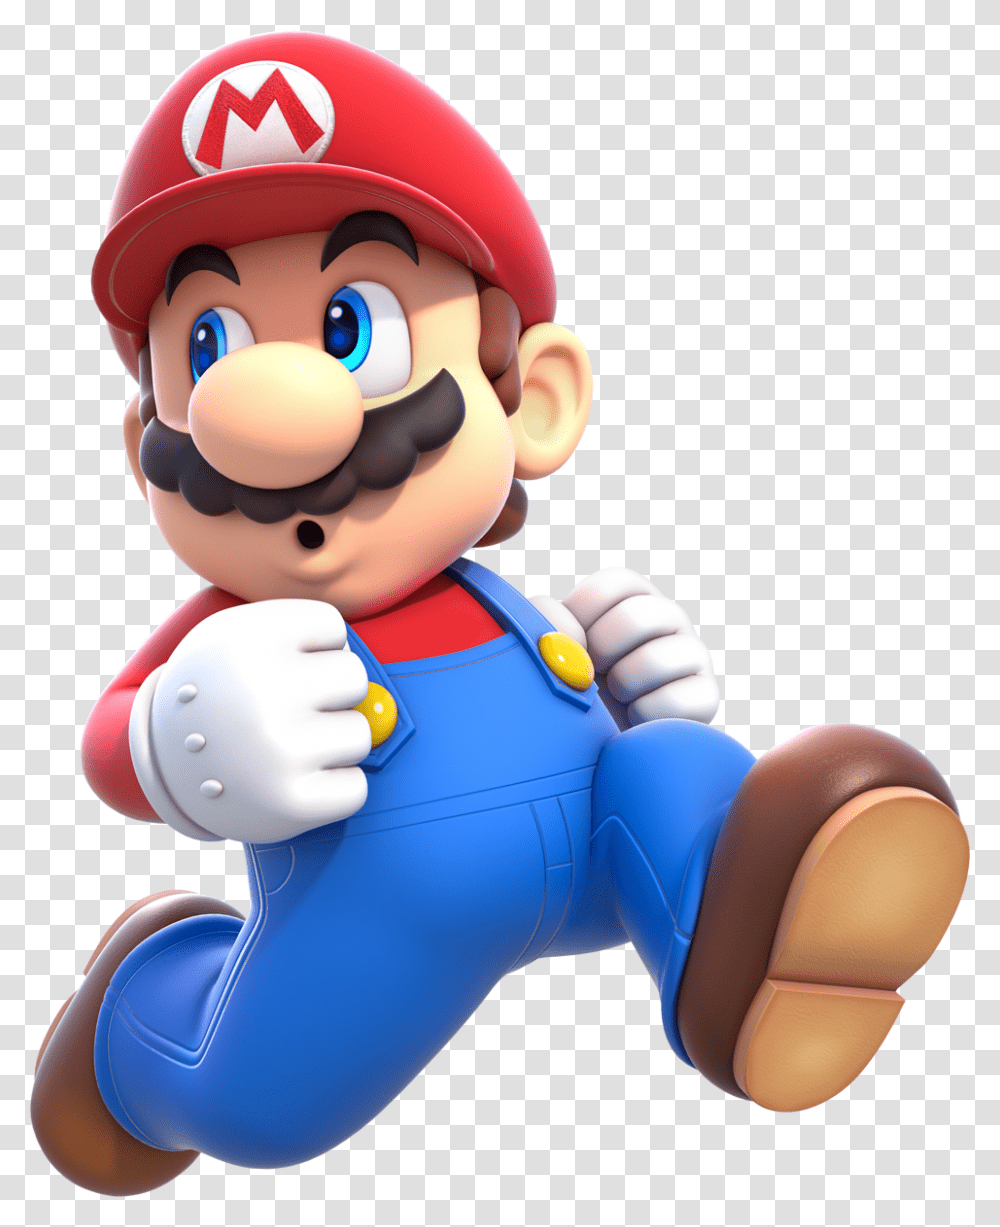 Mario Image File Mario, Super Mario, Toy Transparent Png